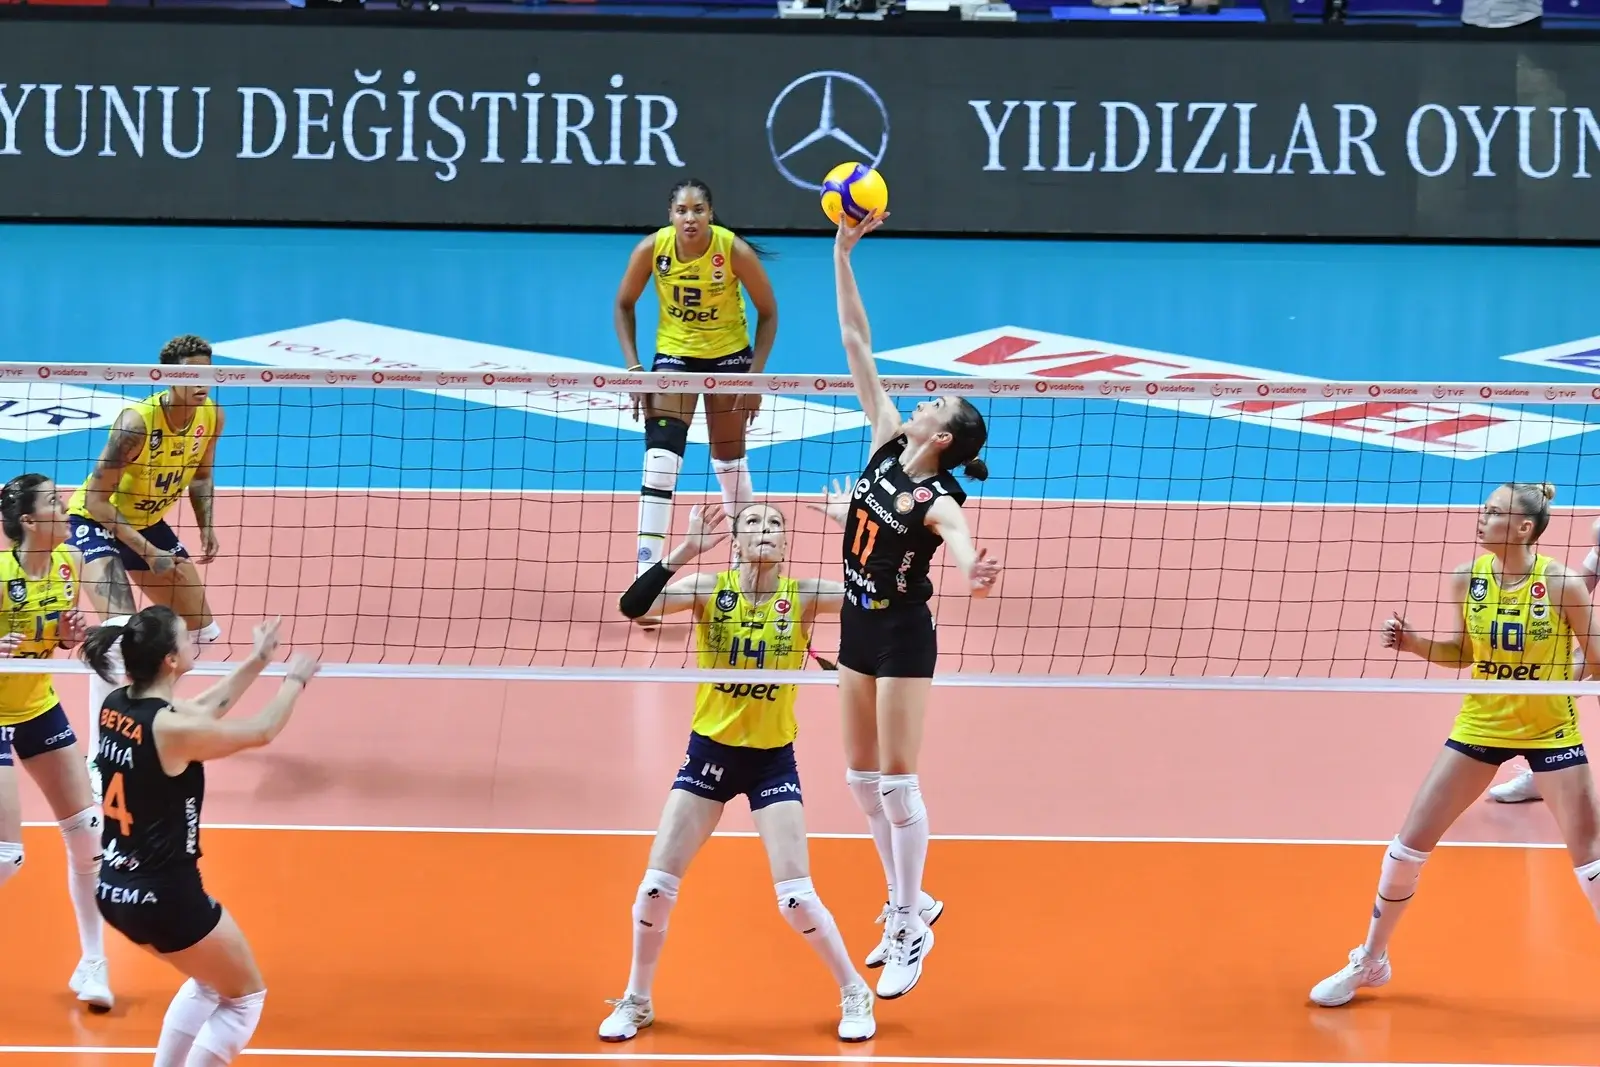 Fenerbahçe Opet, Eczacıbaşı Dynavit'i 3-0 Yenerek Sultanlar Ligi Şampiyonluğuna Bir Adım Daha Yaklaştı!